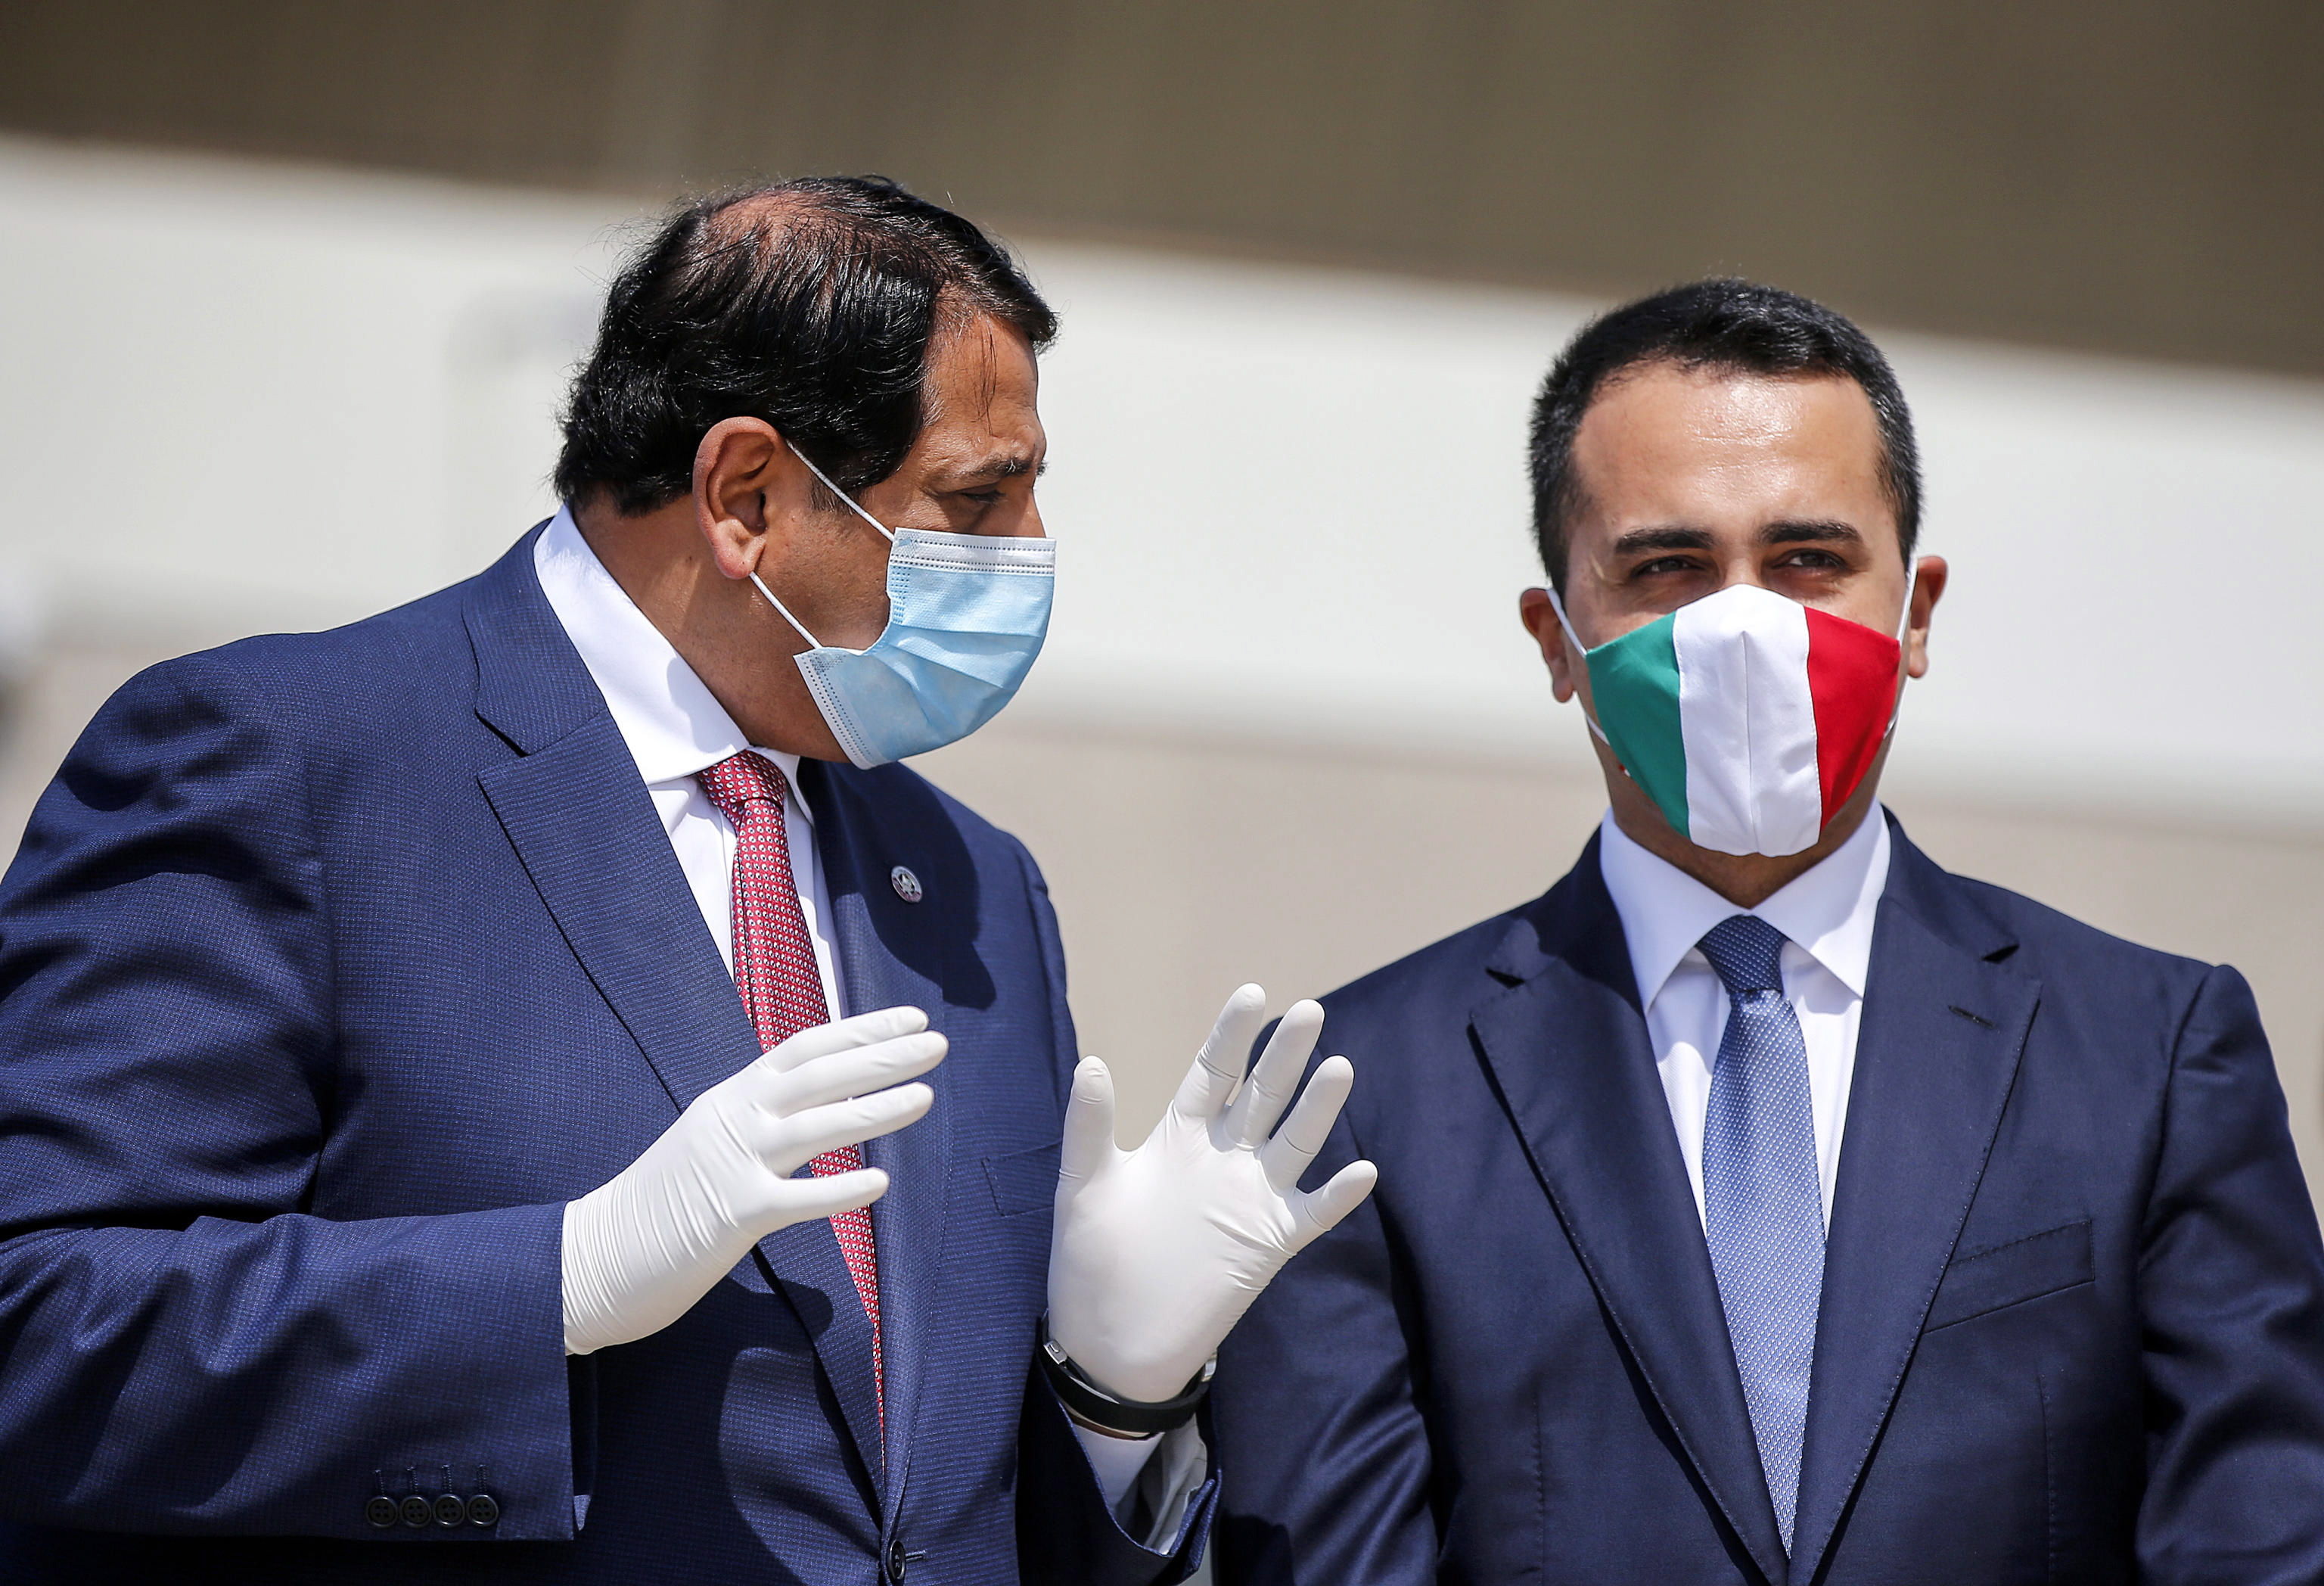 Il ministro degli Esteri italiano Luigi Di Maio ha indossato una maschera con la bandiera italiana.